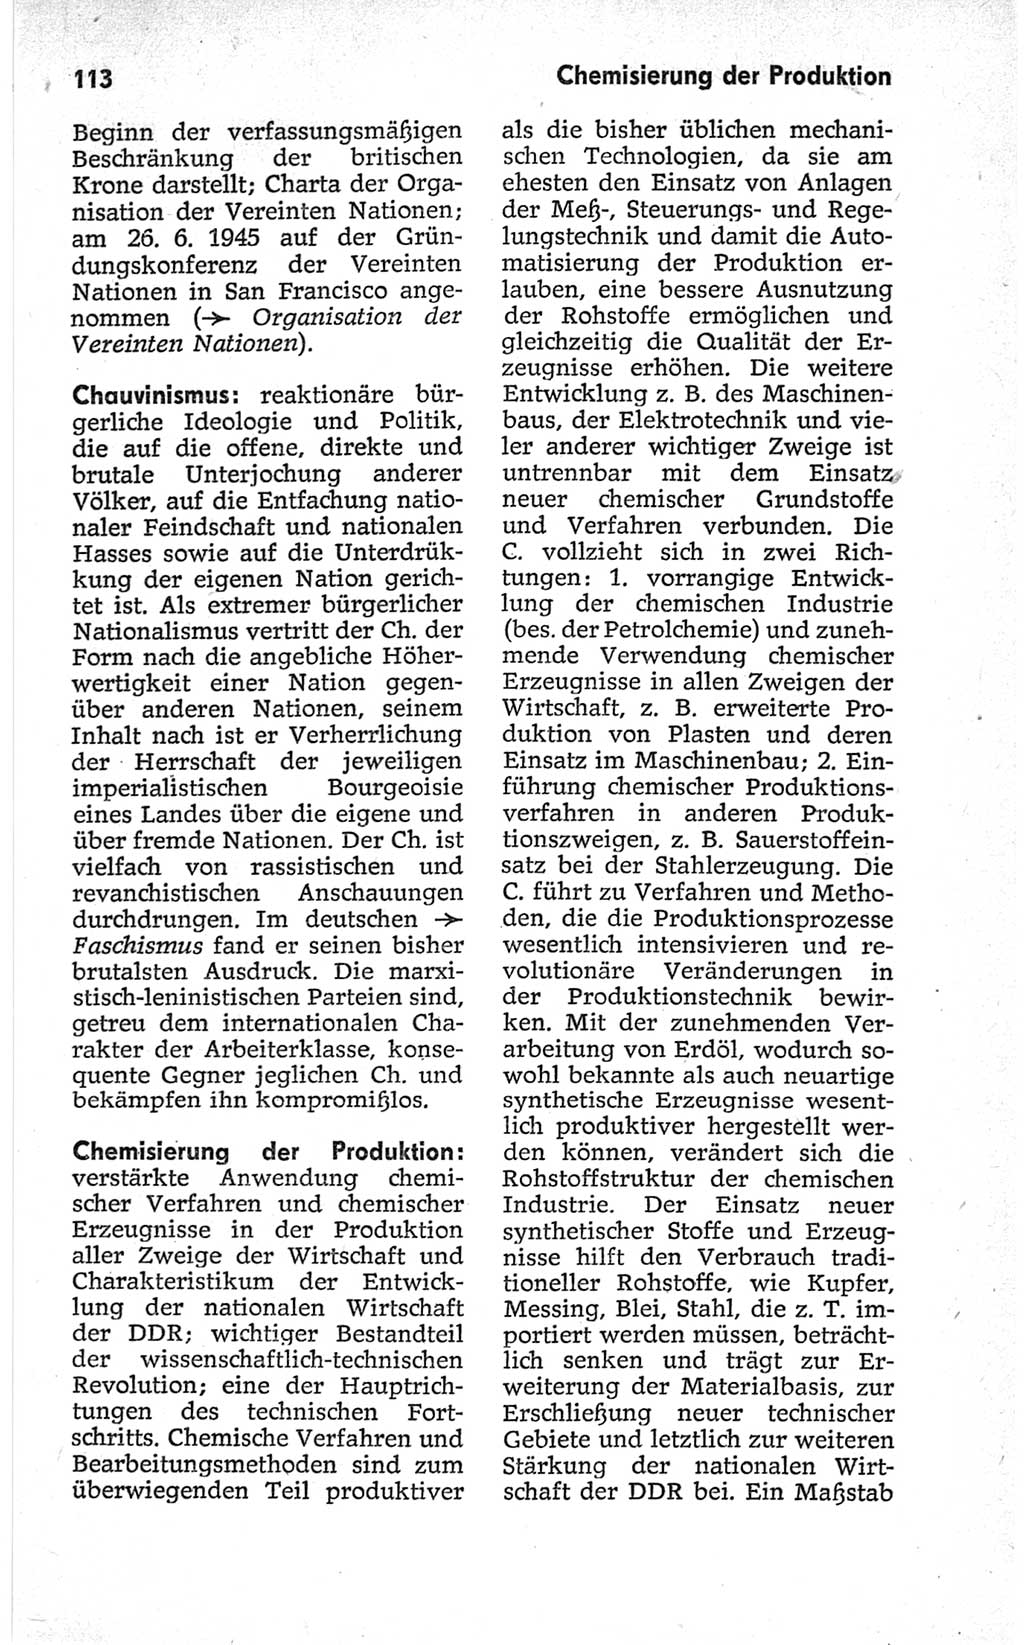 Kleines politisches Wörterbuch [Deutsche Demokratische Republik (DDR)] 1967, Seite 113 (Kl. pol. Wb. DDR 1967, S. 113)